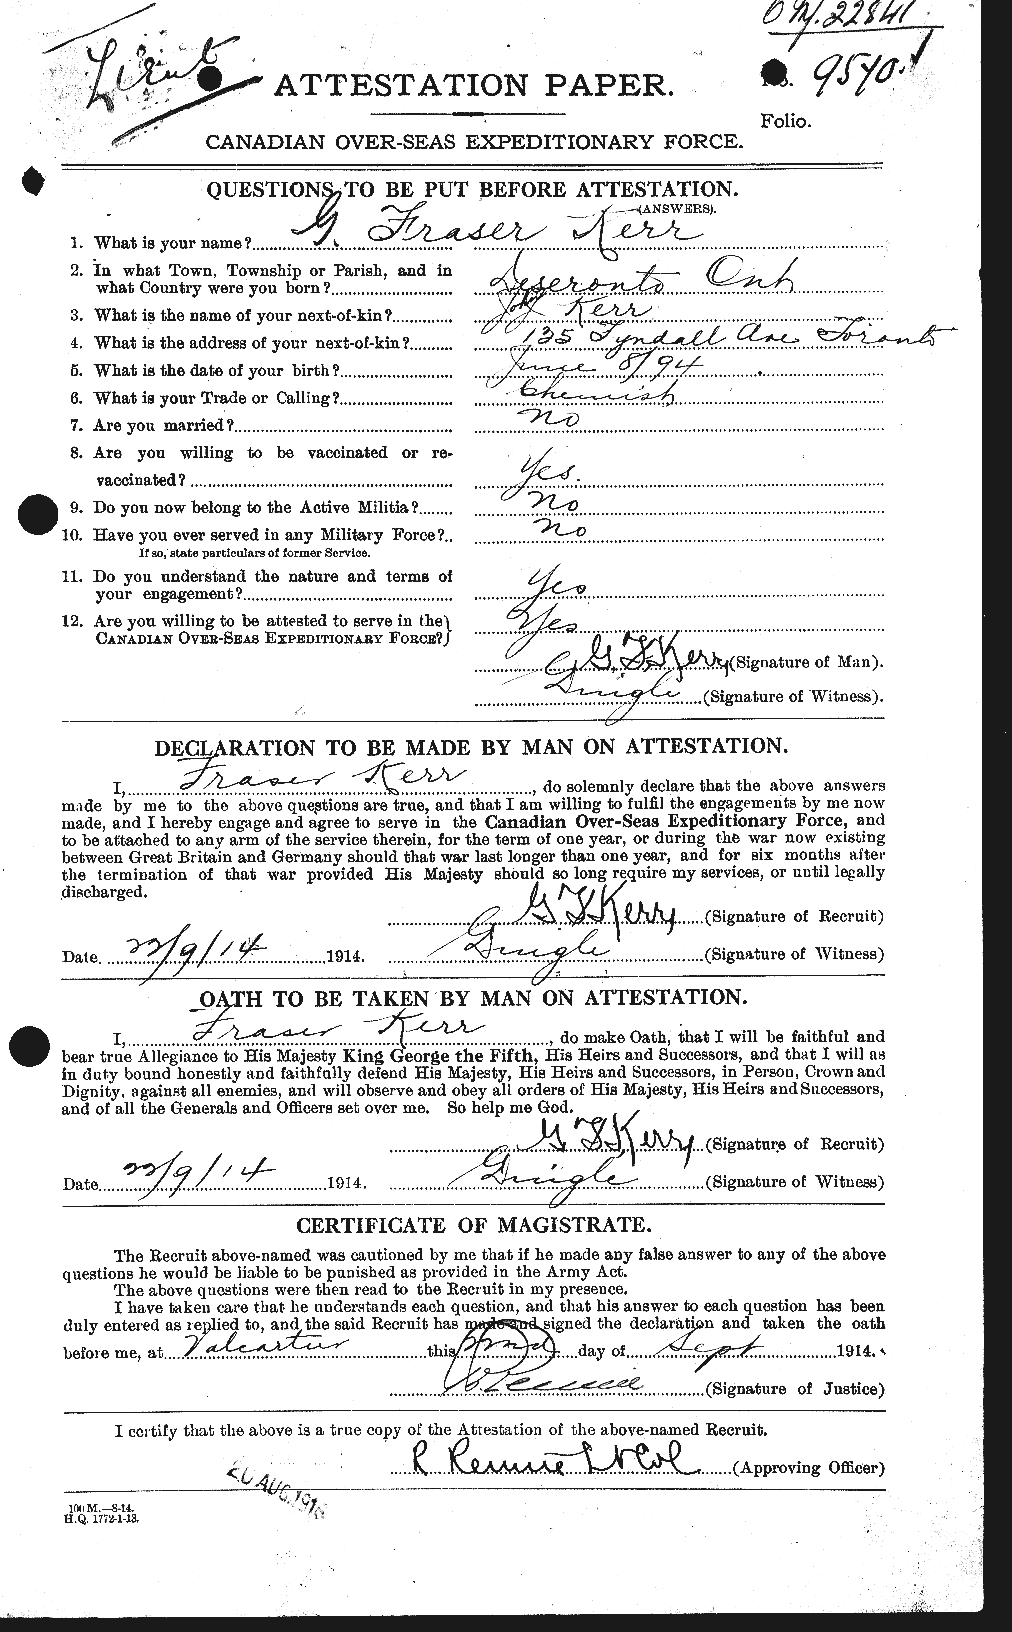 Dossiers du Personnel de la Première Guerre mondiale - CEC 431944a